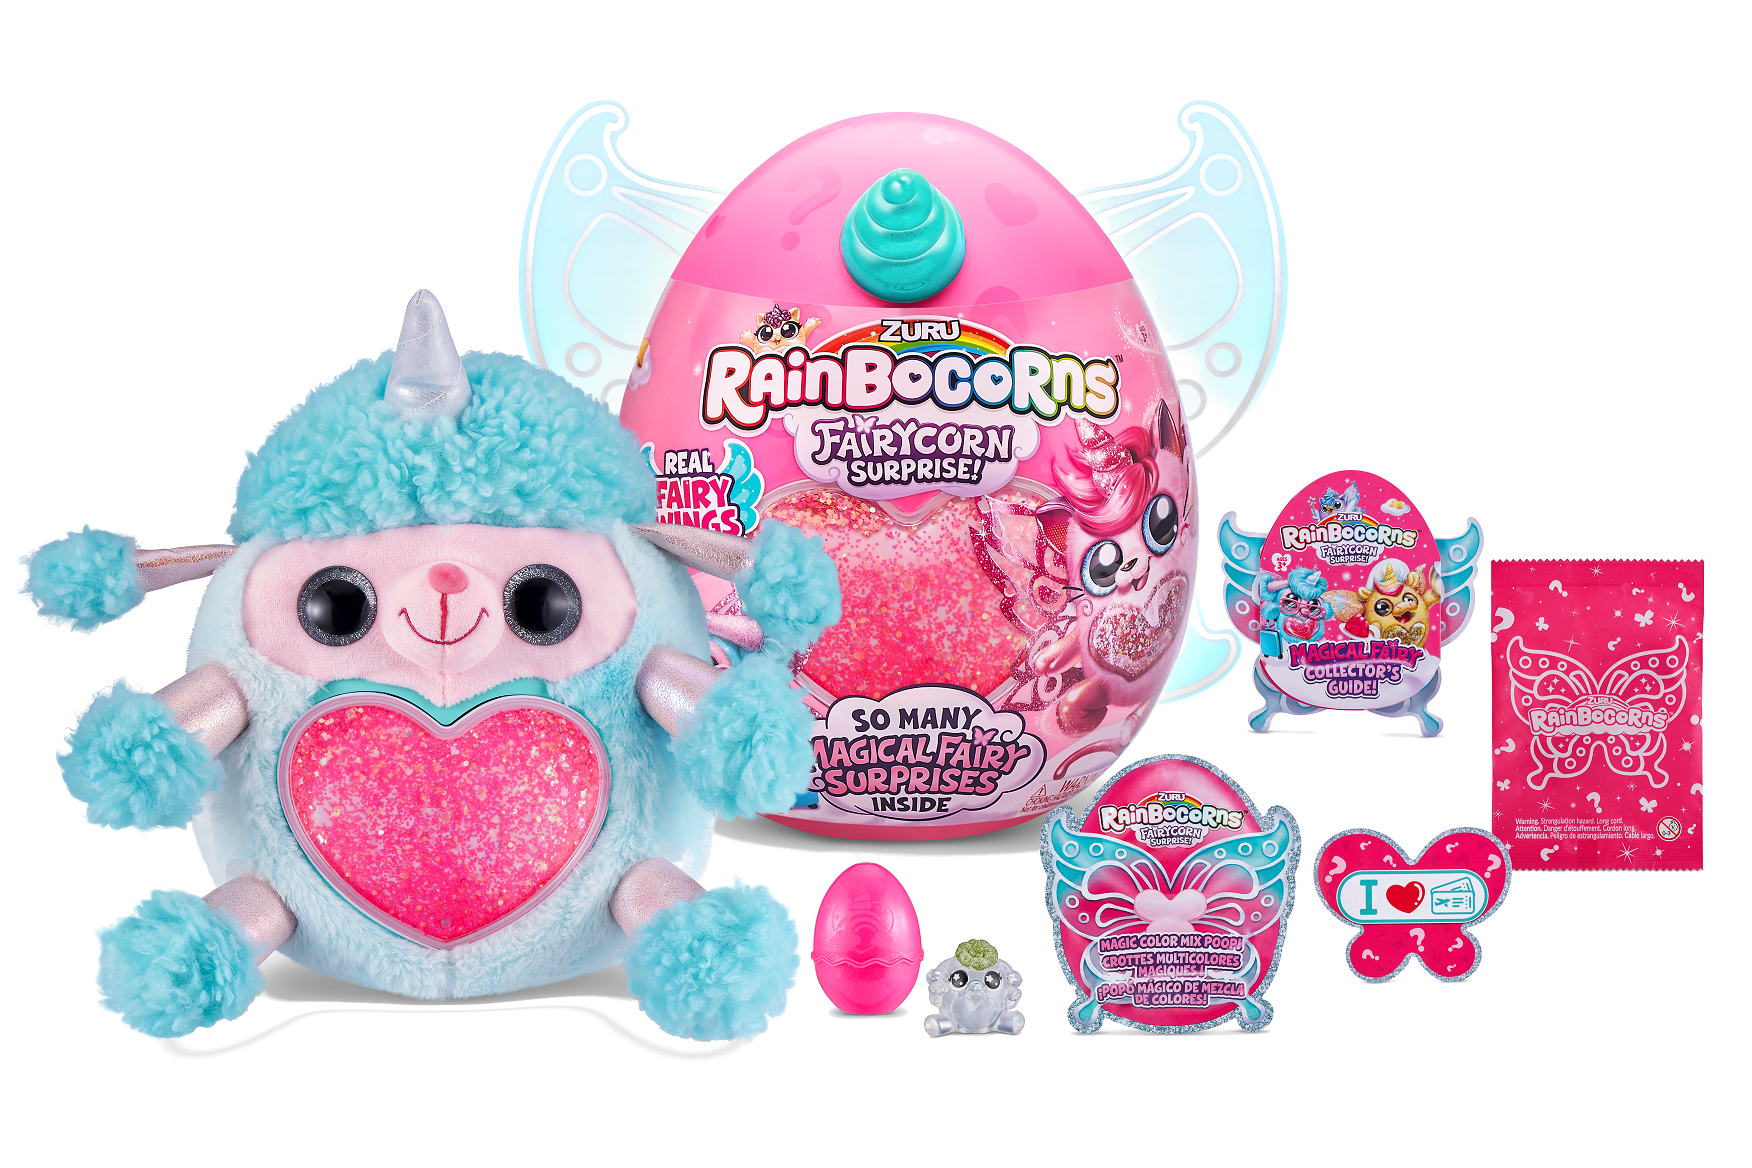 Игровой набор Rainbocorns сюрприз в яйце Fairycorn Surprise (плюш питомец , мини питомец в яйце, слайм, съемные крылышки) цвет голубой— магазин-салютов.рус